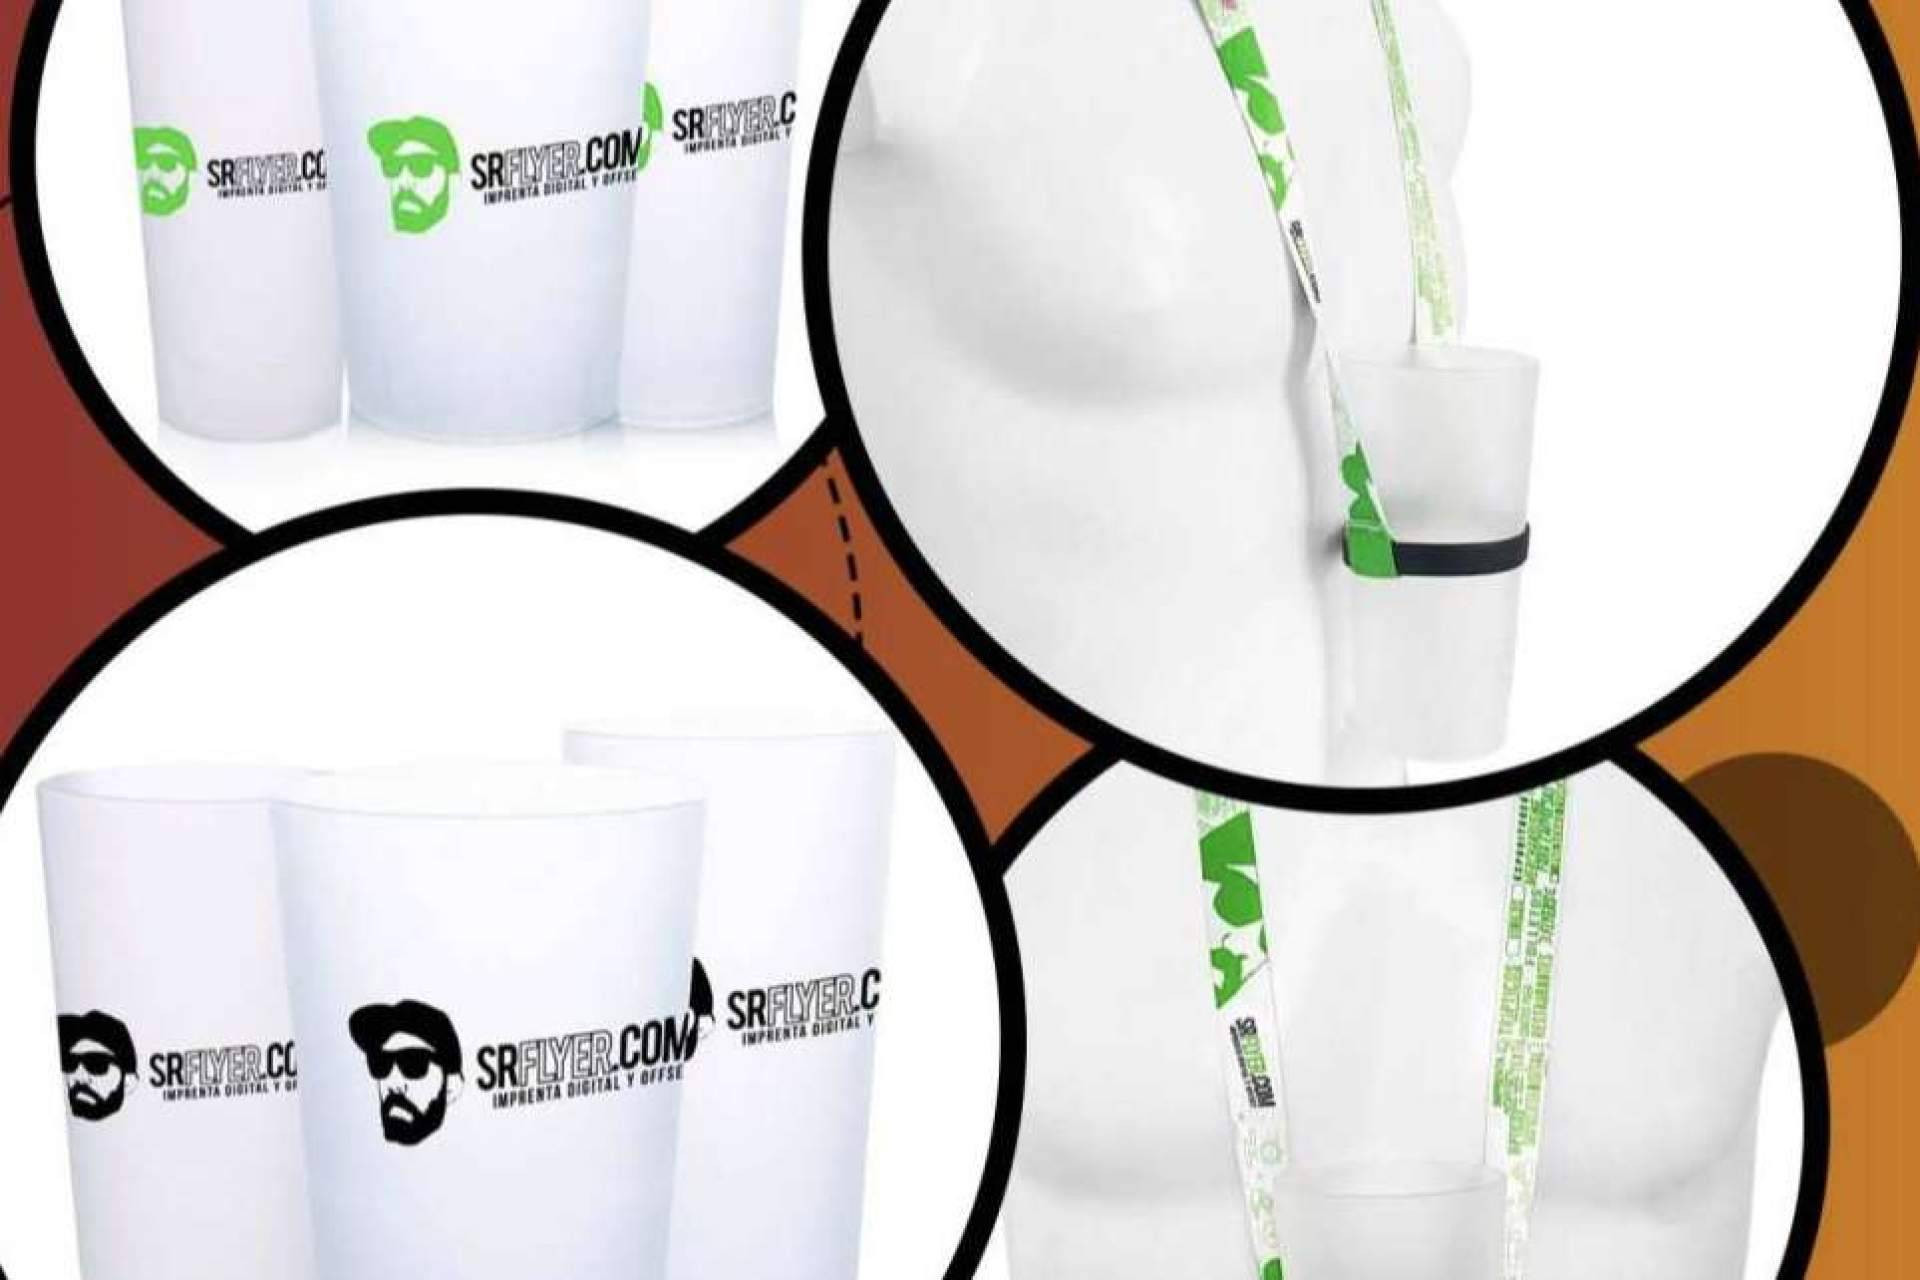  Los vasos de plástico personalizados de SrFlyer.com 